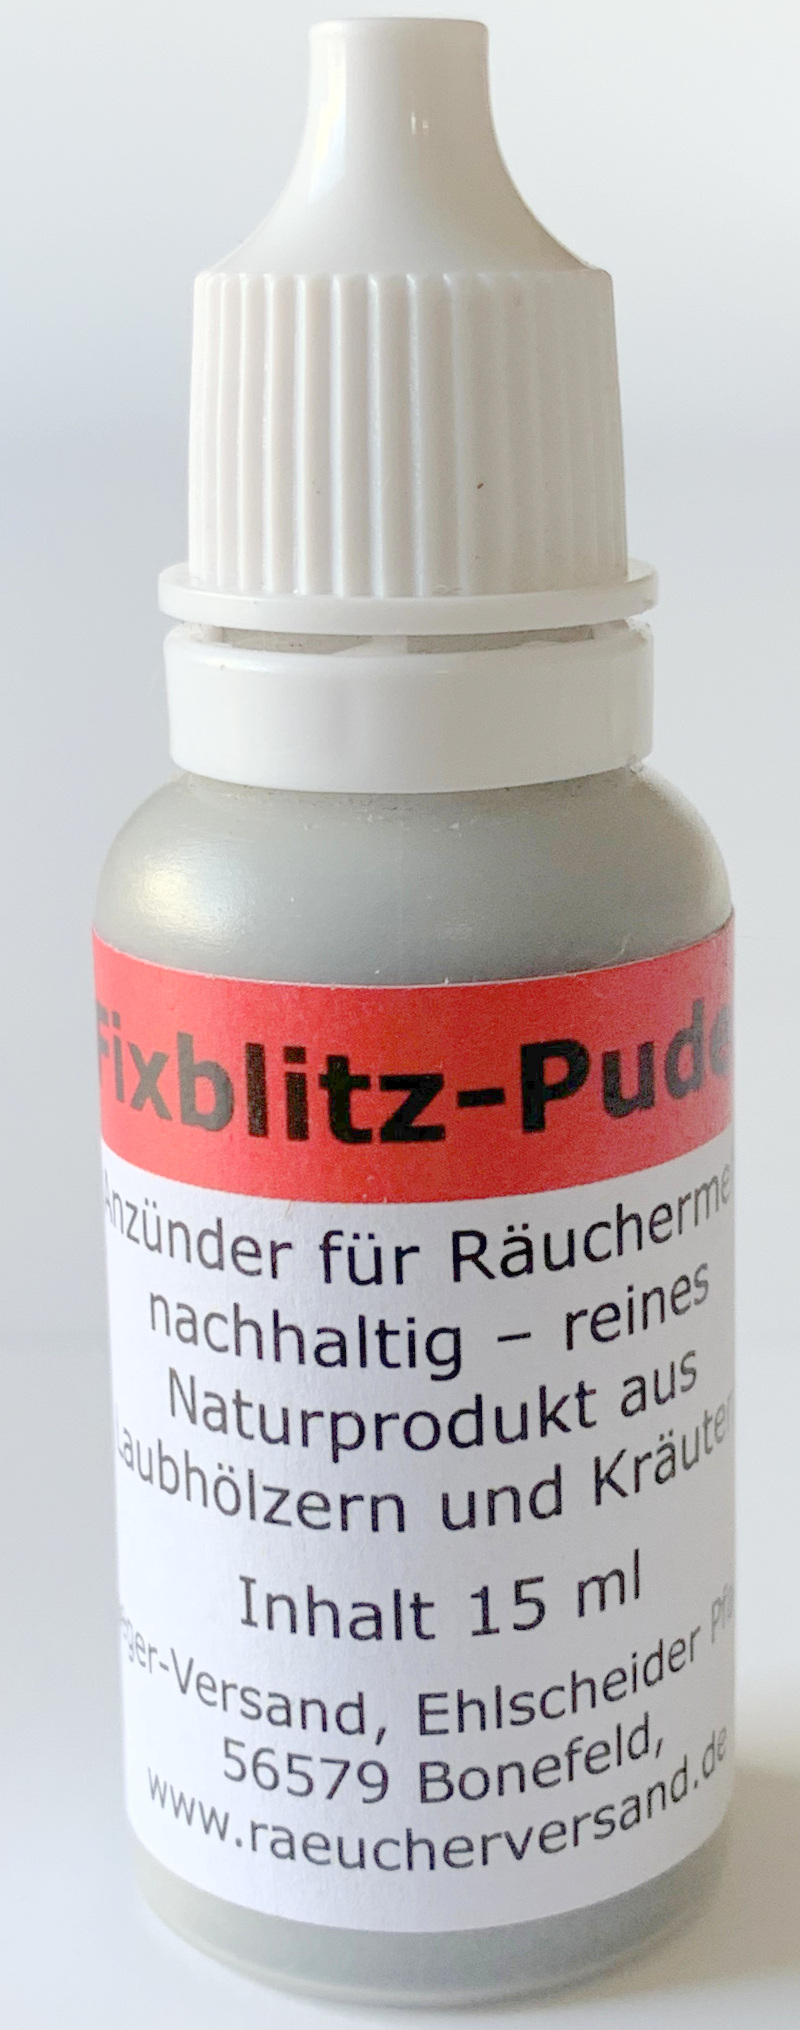 Fixblitz-Puder 15 ml für ca. 60 Anzündvorgänge